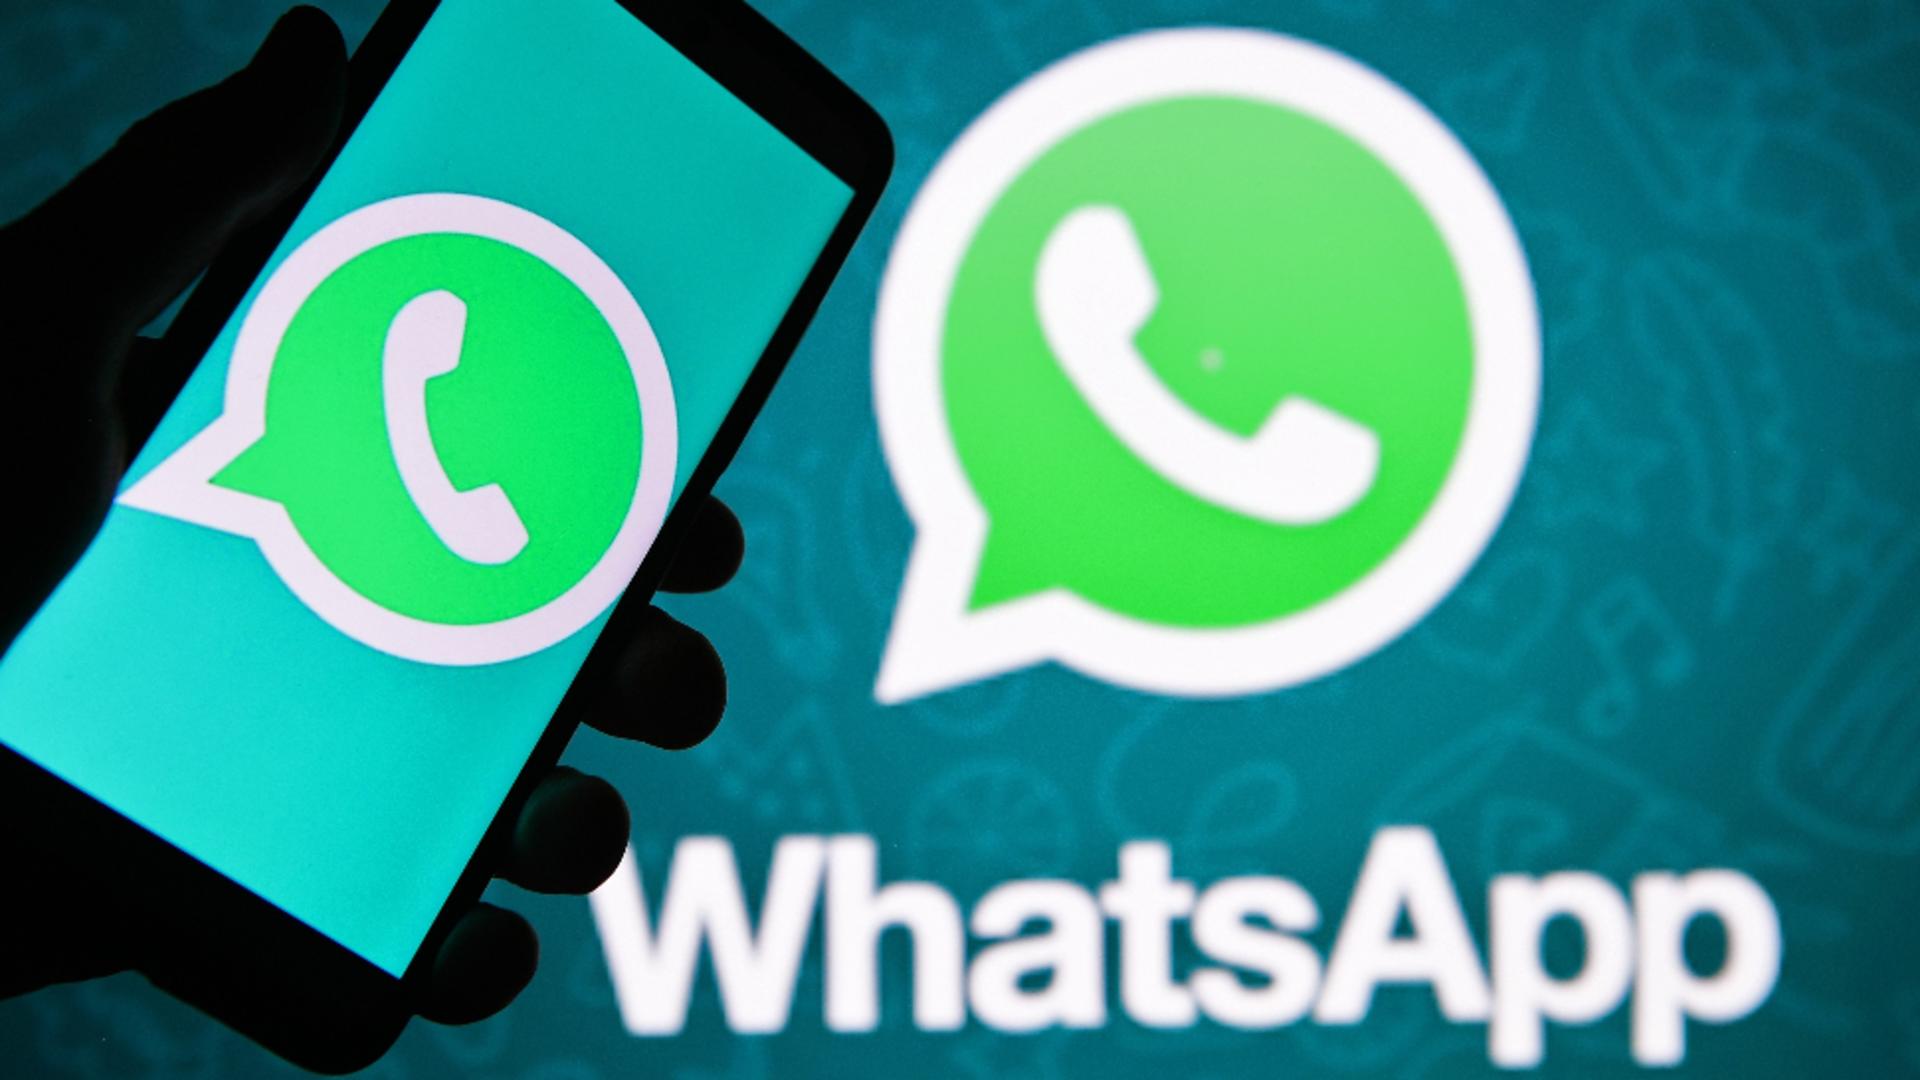 Rețeaua de socializare WhatsApp vine cu noi termene și condiții / Foto: Profi Media